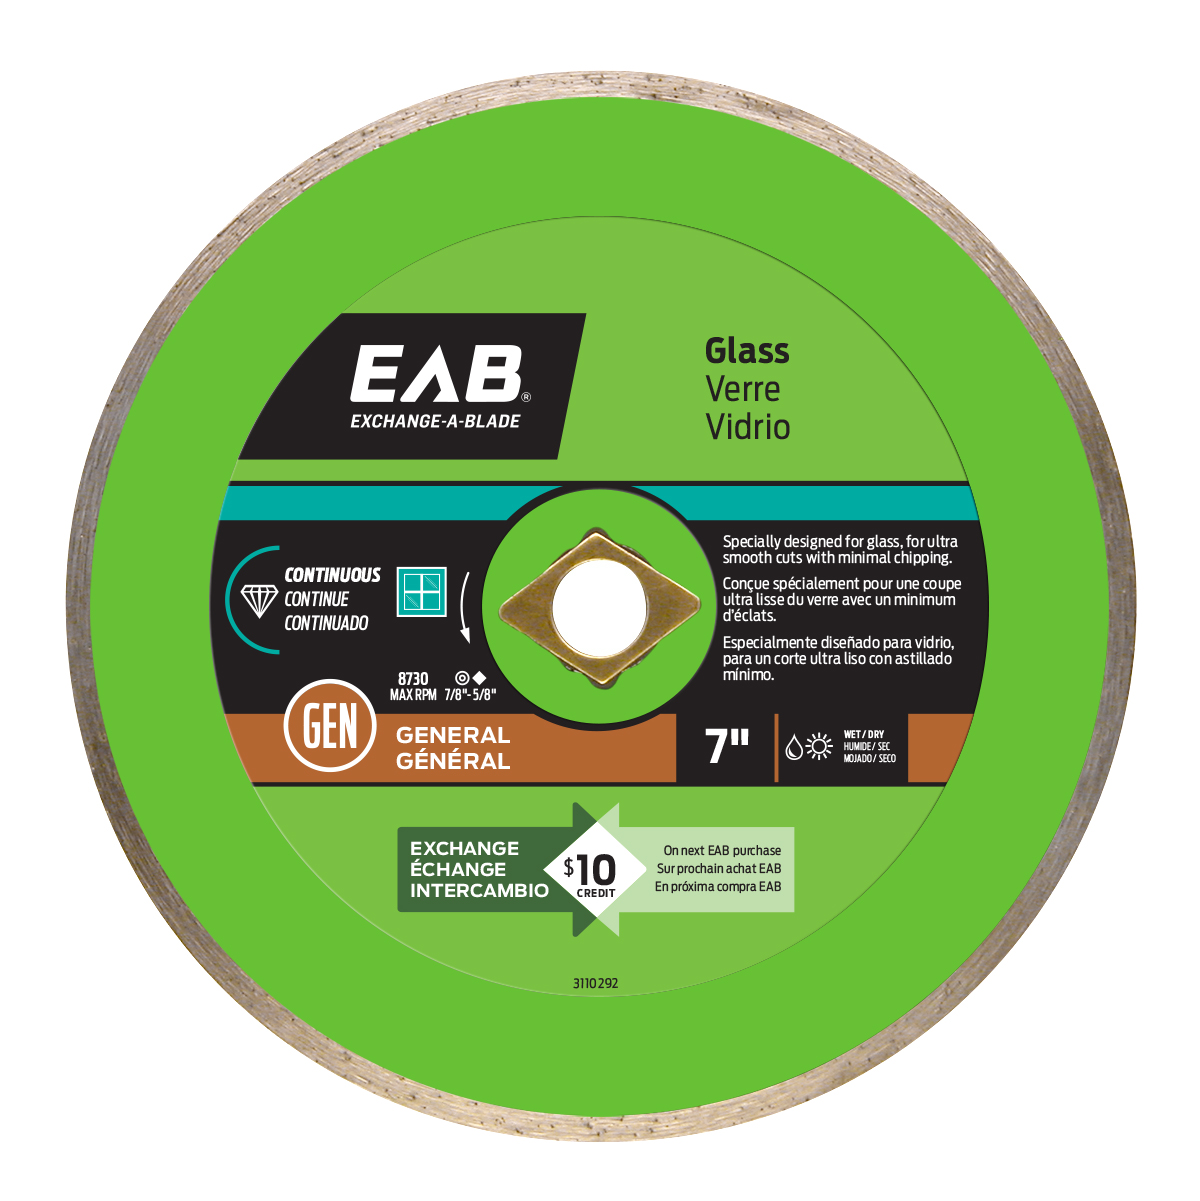 EAB (3110292) product